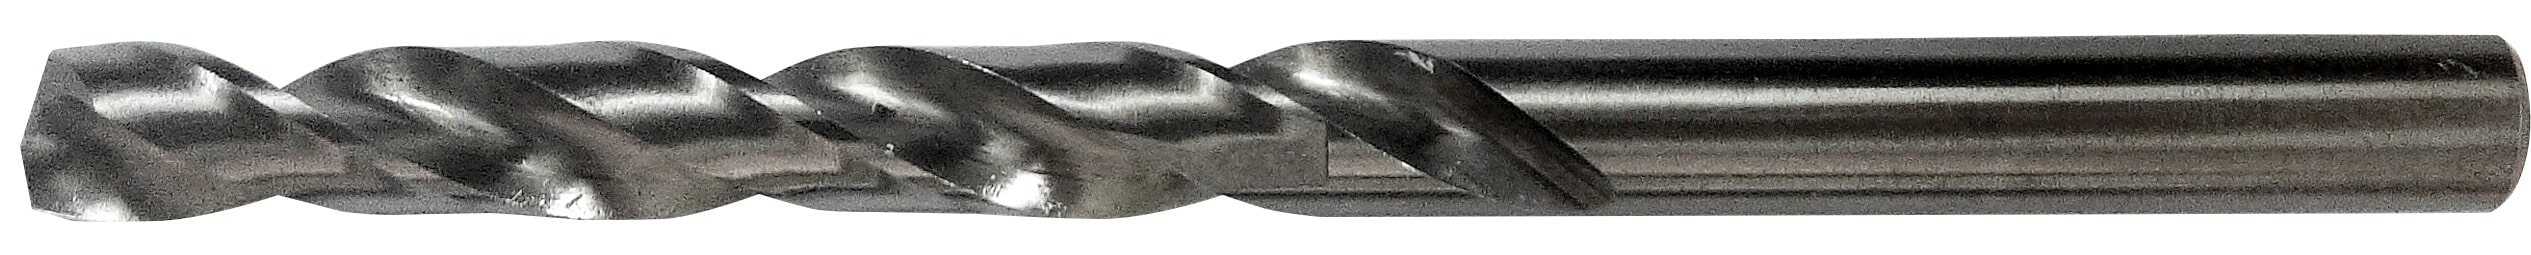 Burghiu din cobalt pentru realizarea de găuri în metal și oțel inoxidabil, conform DIN 338